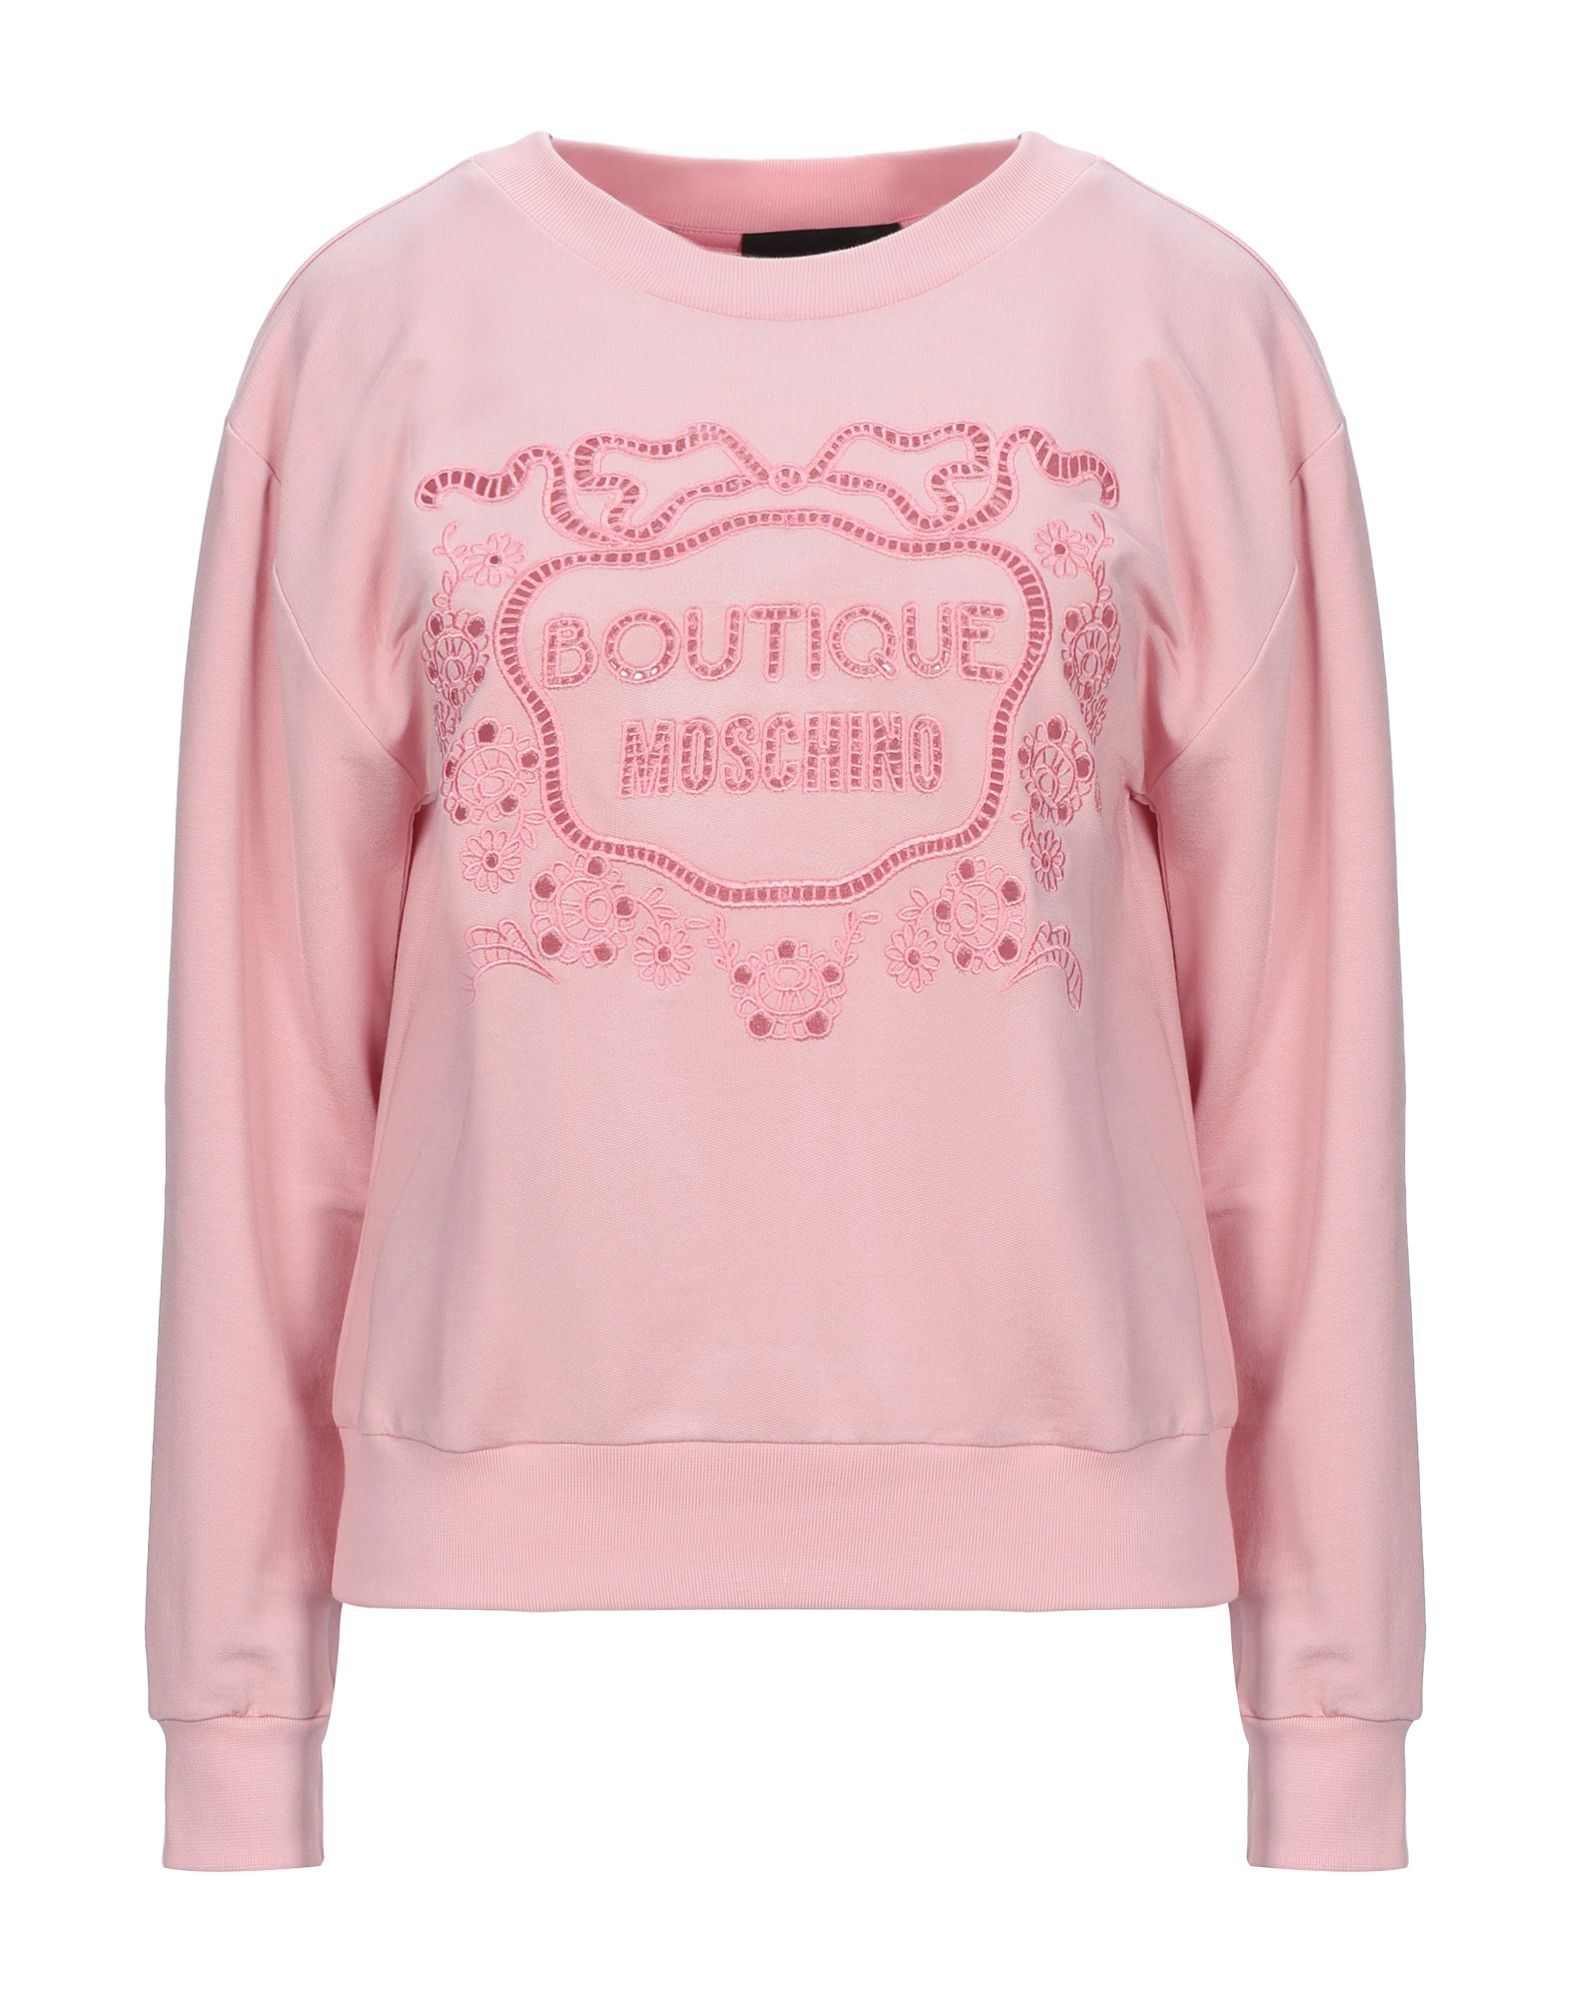 pink boutique sweatshirts